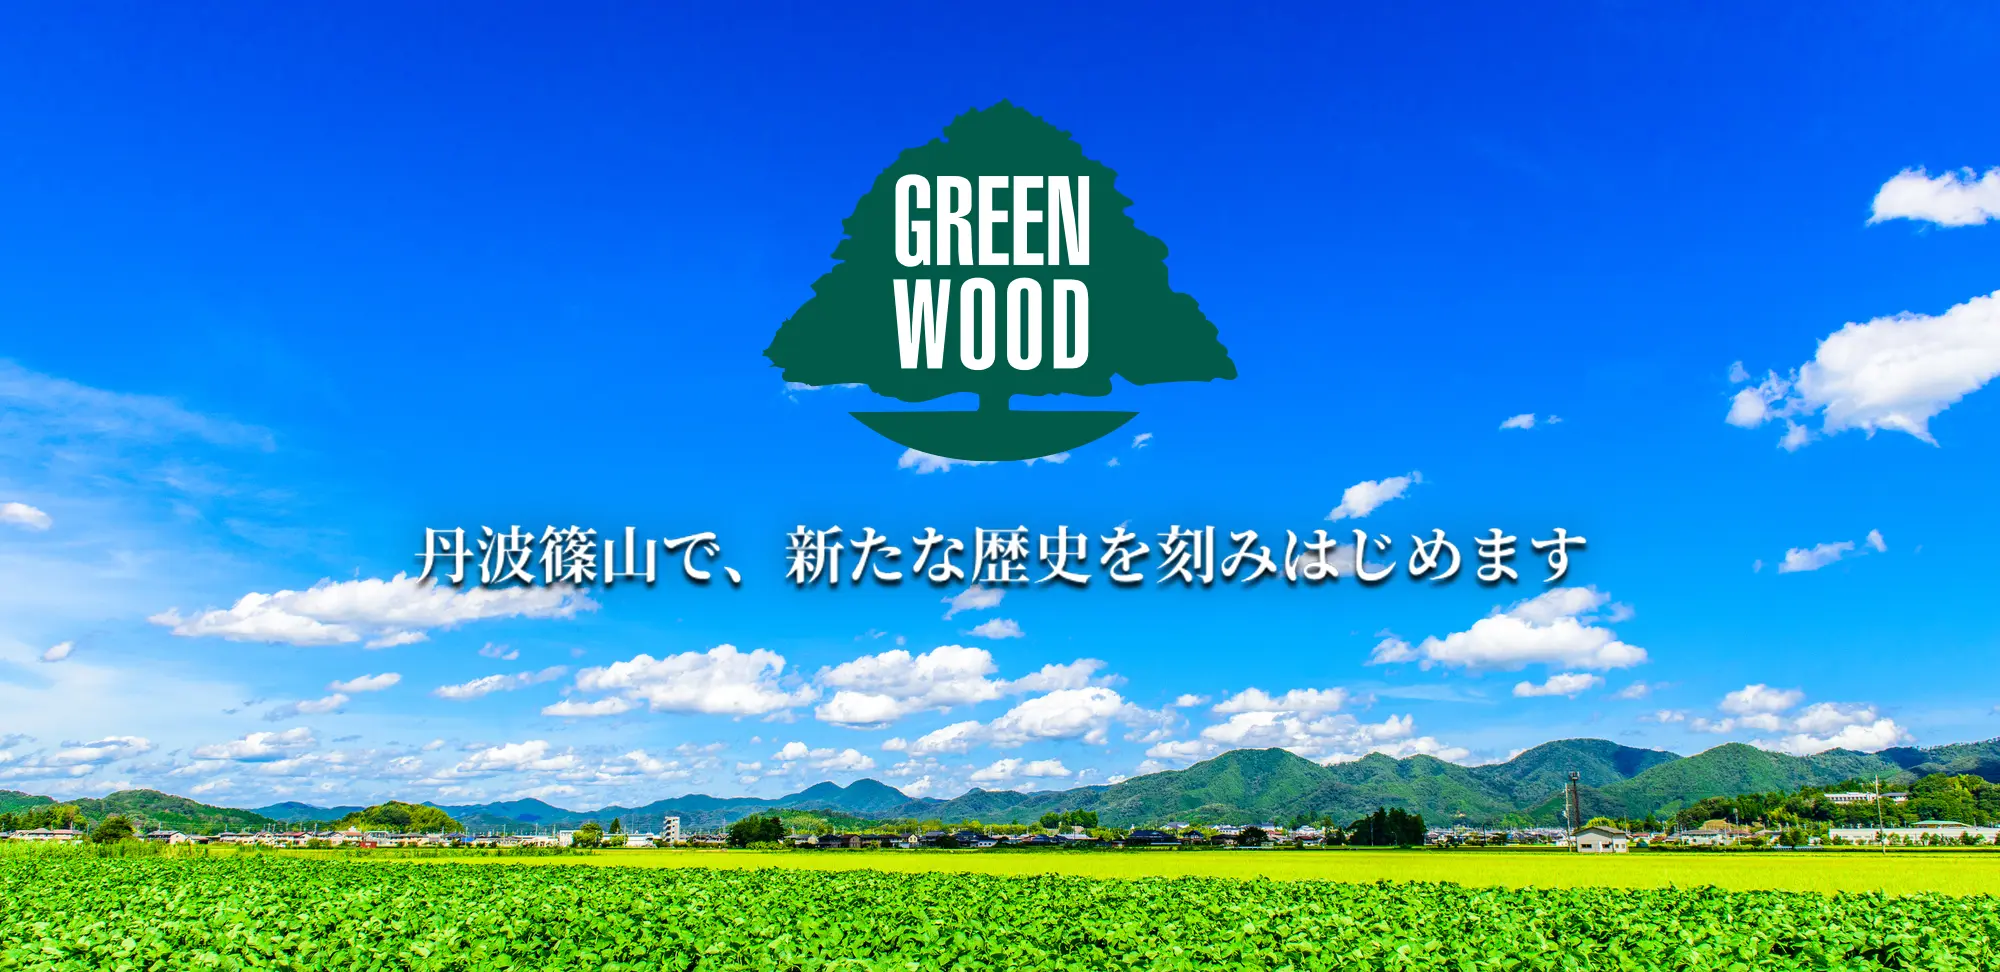 グリーンウッドファクトリーのトップビジュアル丹波篠山の風景